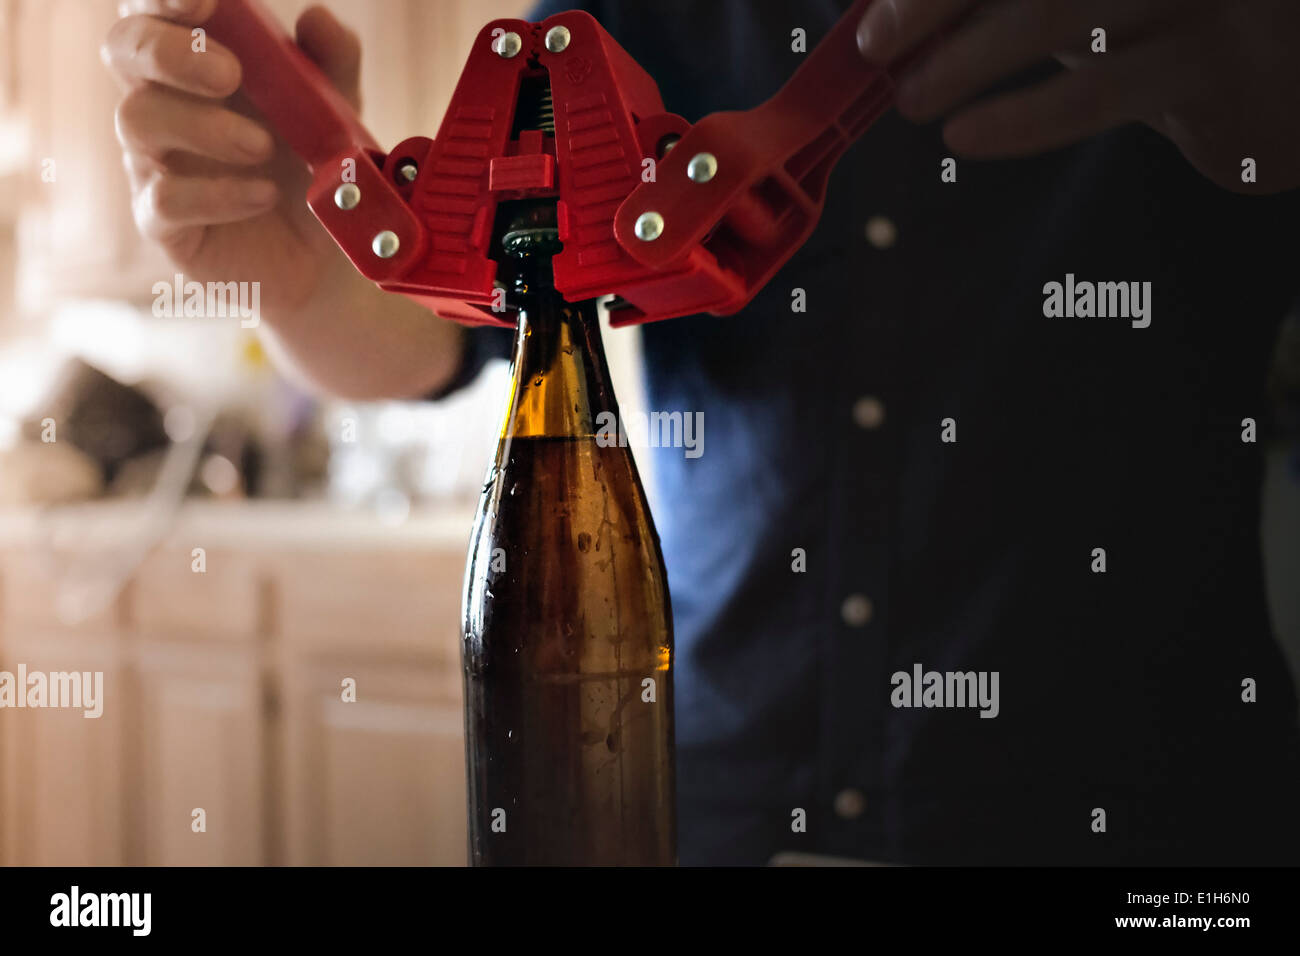 Cerca del hombre usar corona corker para el cierre de la parte superior de la botella de cerveza artesanal inicio Foto de stock